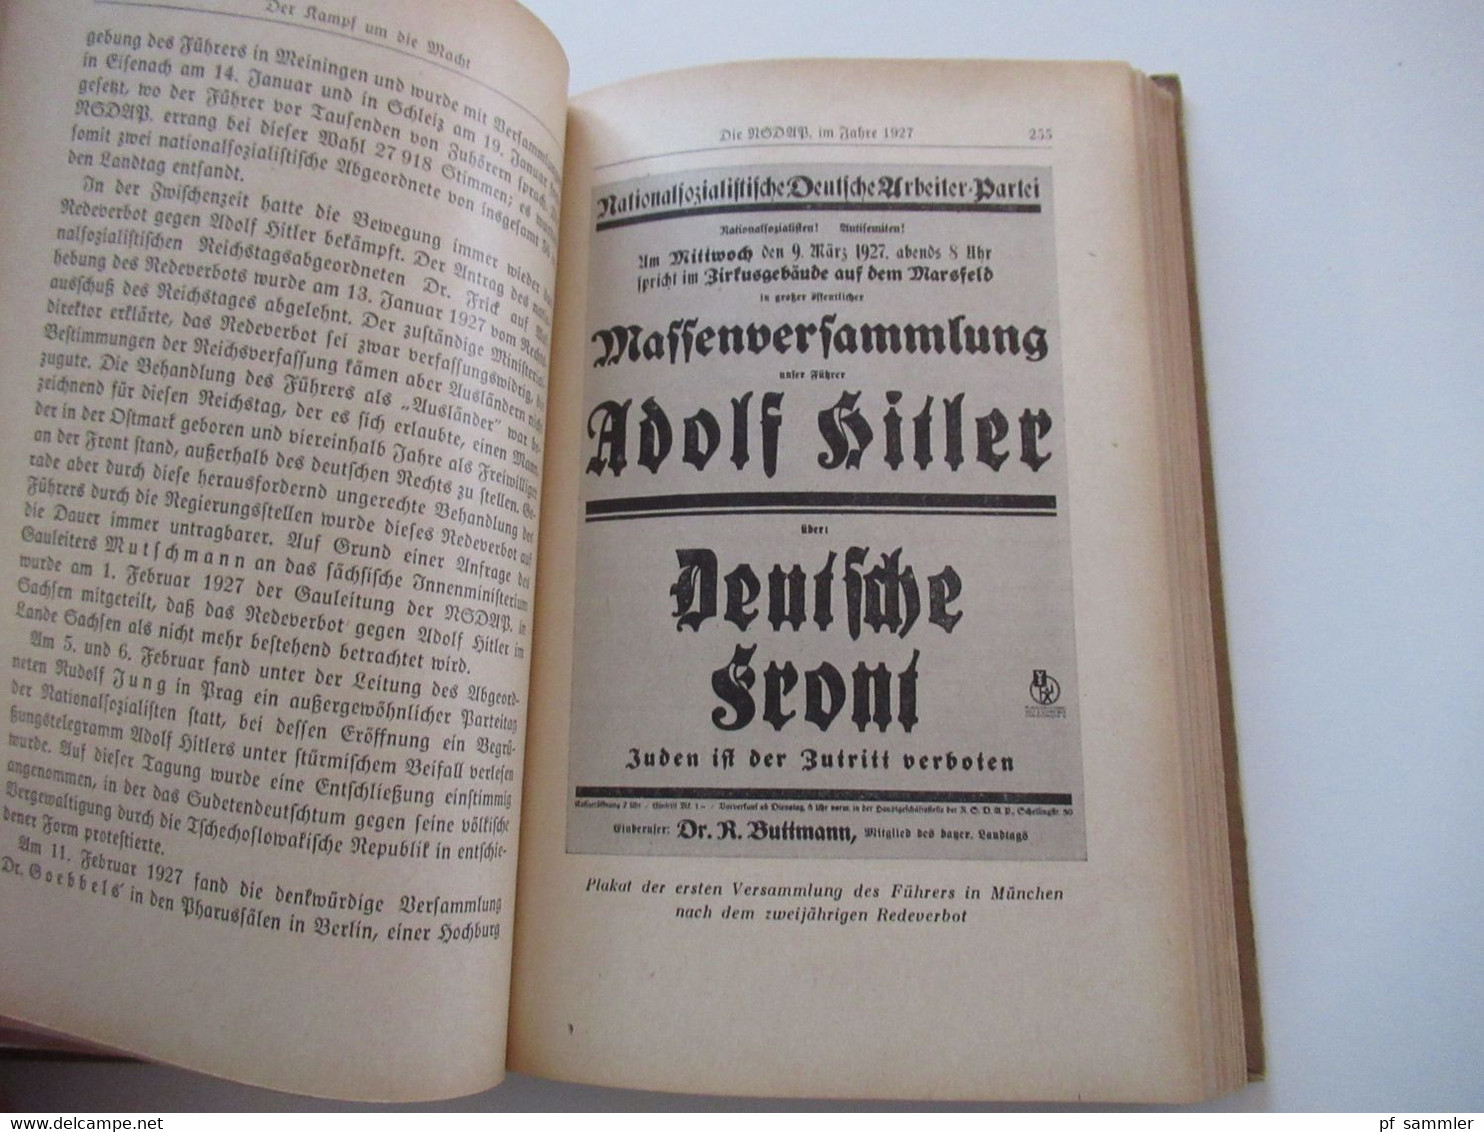 Zentralverlag der NSDAP München 1943 Dokumente des Dritten Reiches 1. Band von Fritz Maier Hartmann / NS Propaganda